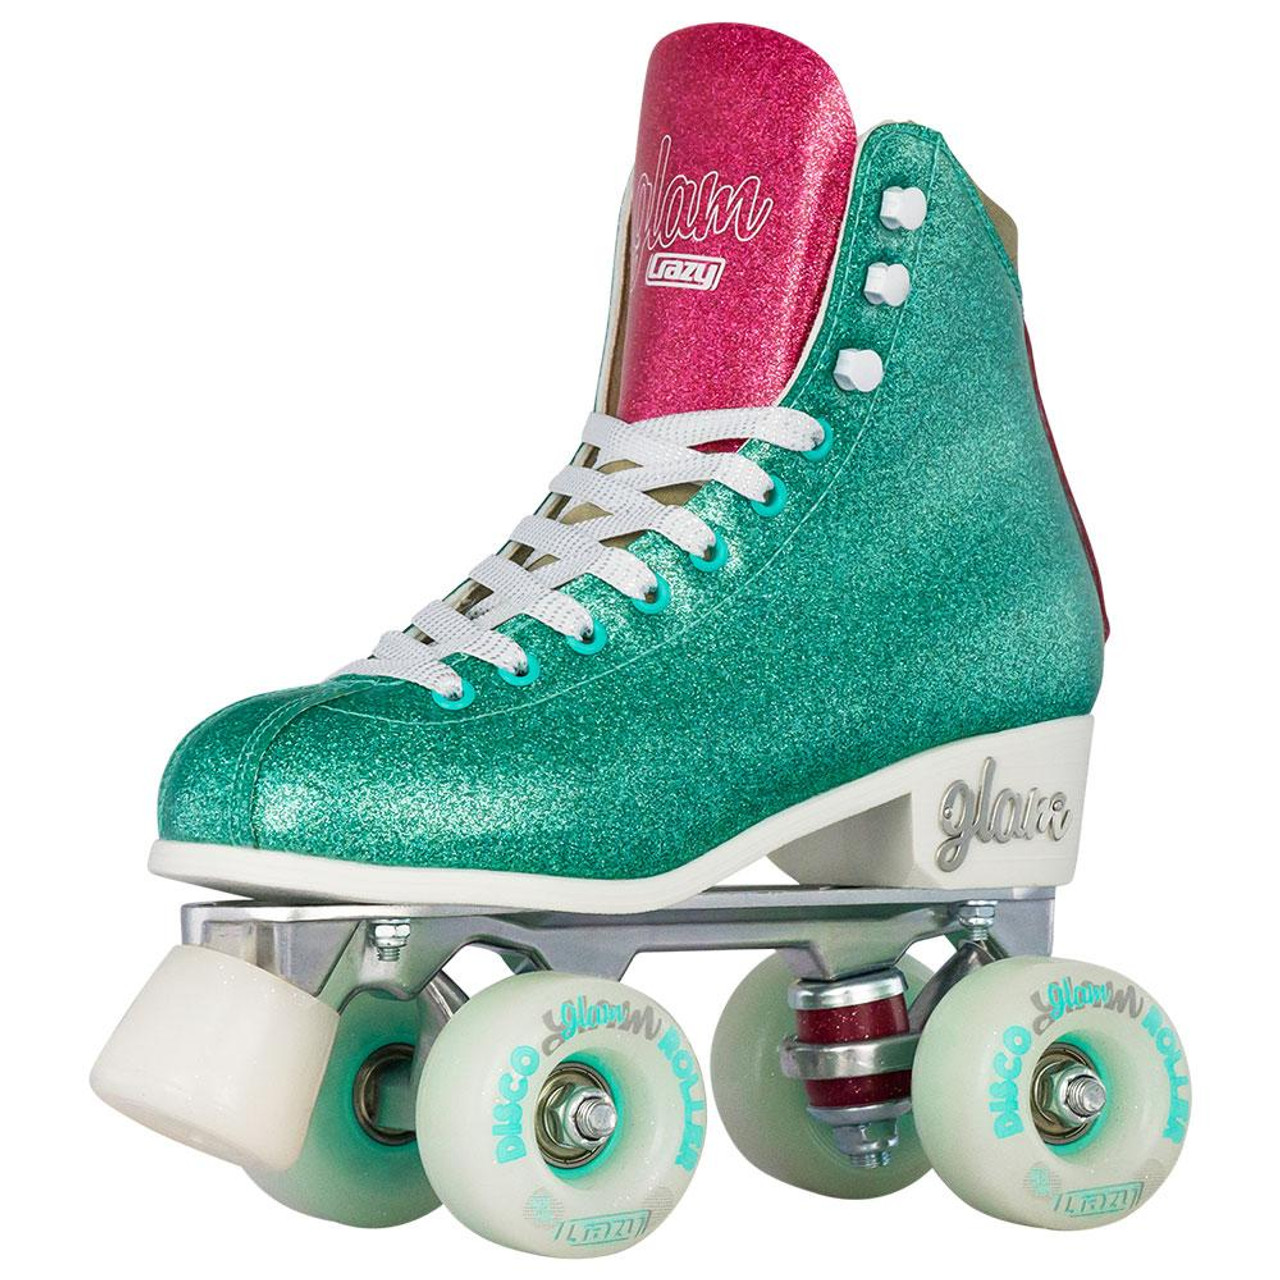 Dom sløring Alexander Graham Bell Disco Glam Roller Skates - Teal Glitter